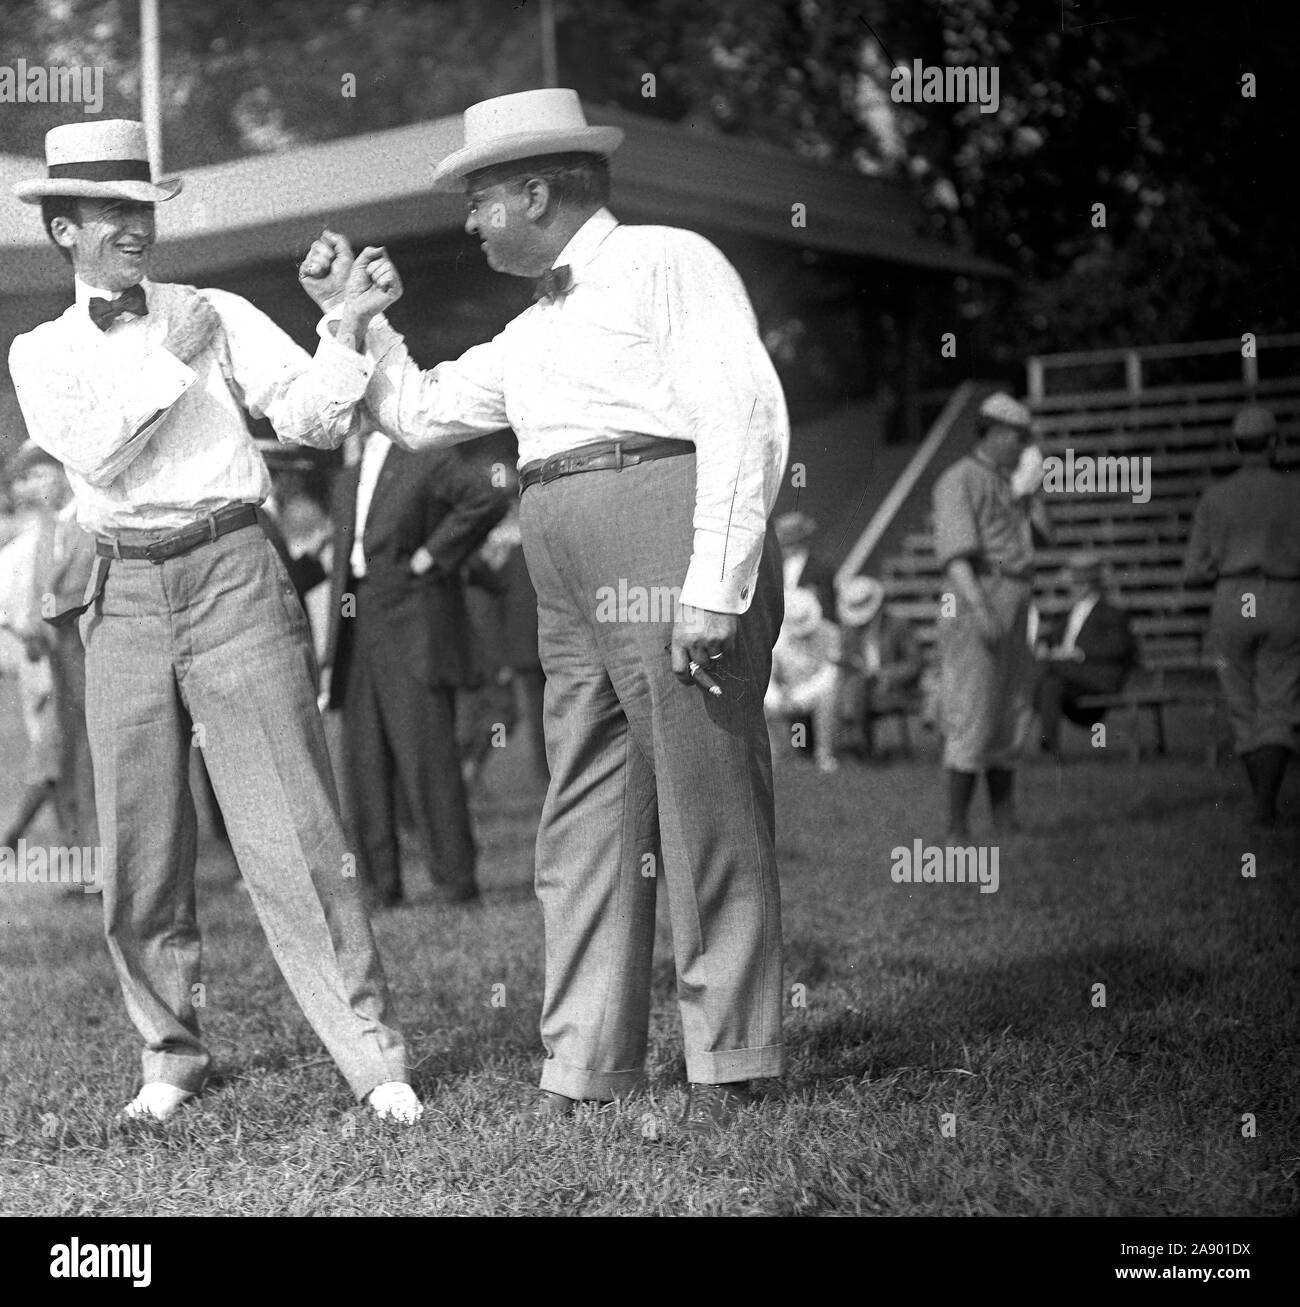 Des membres du Congrès américain Byrnes et Billy Wilson fait semblant de se battre à un match de baseball du Congrès ca. 1911 Banque D'Images